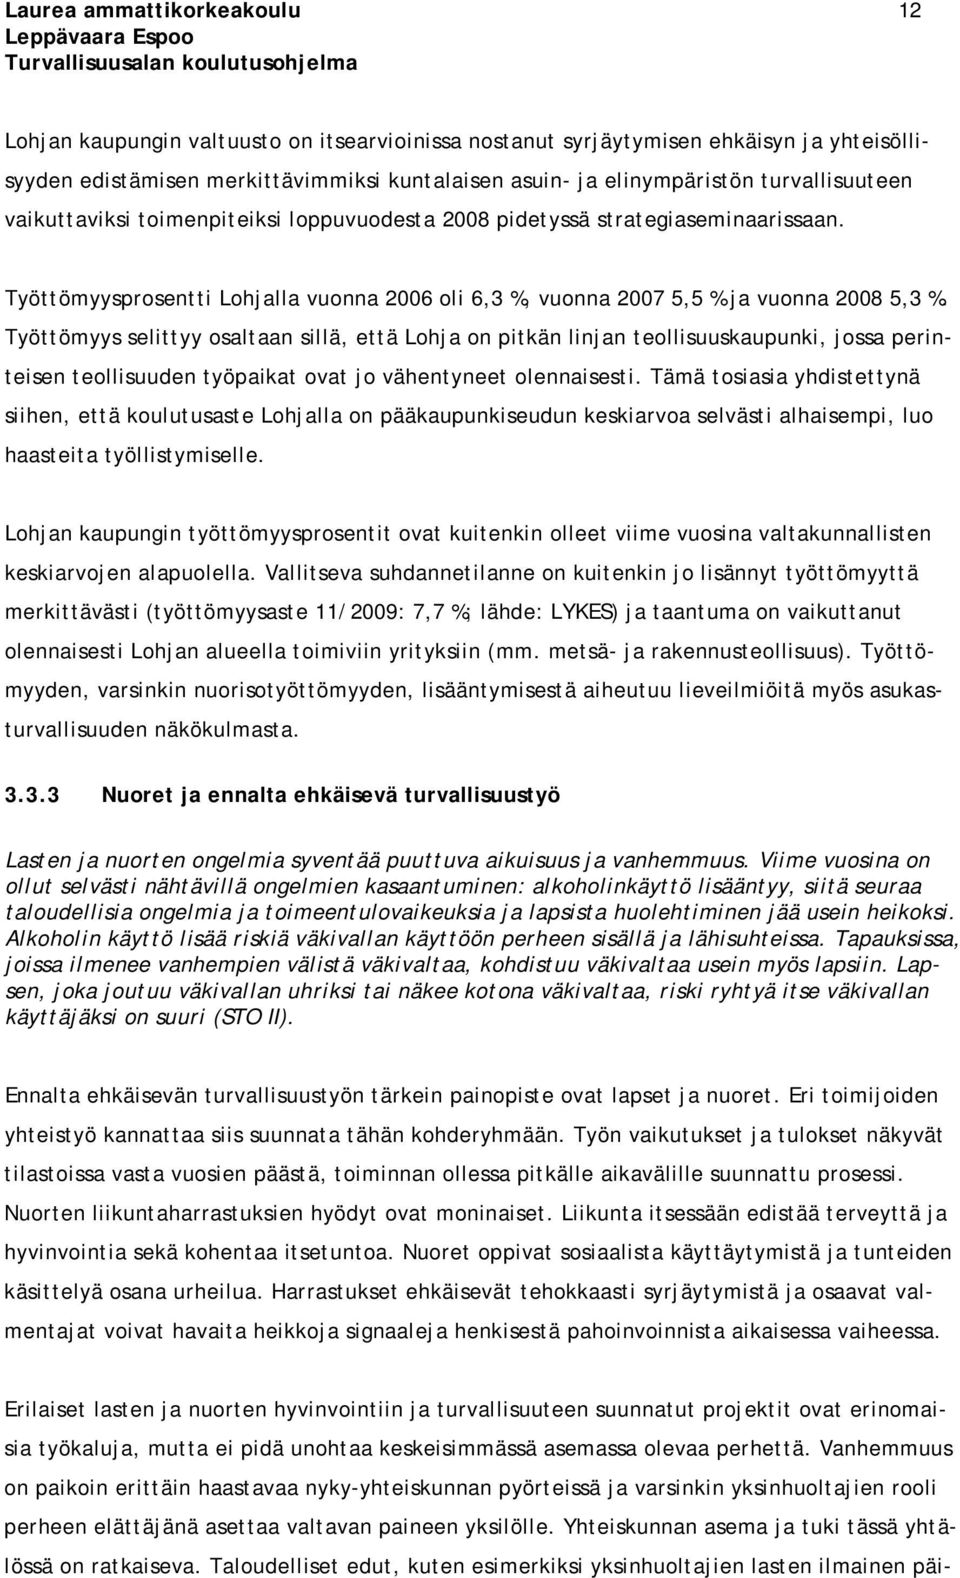 Työttömyysprosentti Lohjalla vuonna 2006 oli 6,3 %, vuonna 2007 5,5 % ja vuonna 2008 5,3 %.